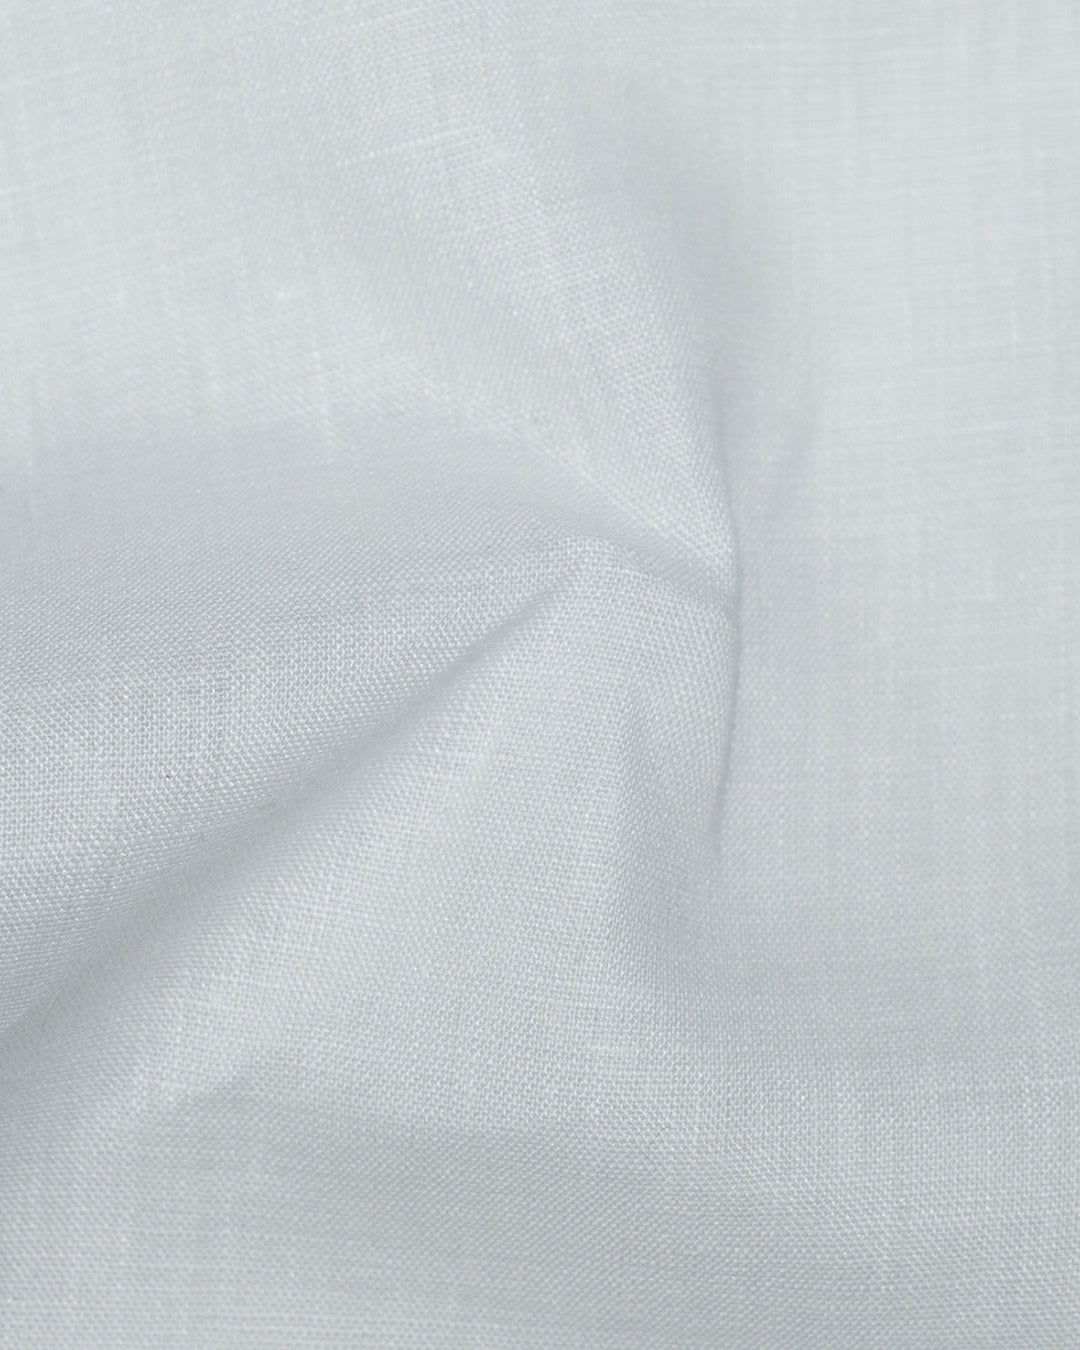 Finest White Linen - 100Li